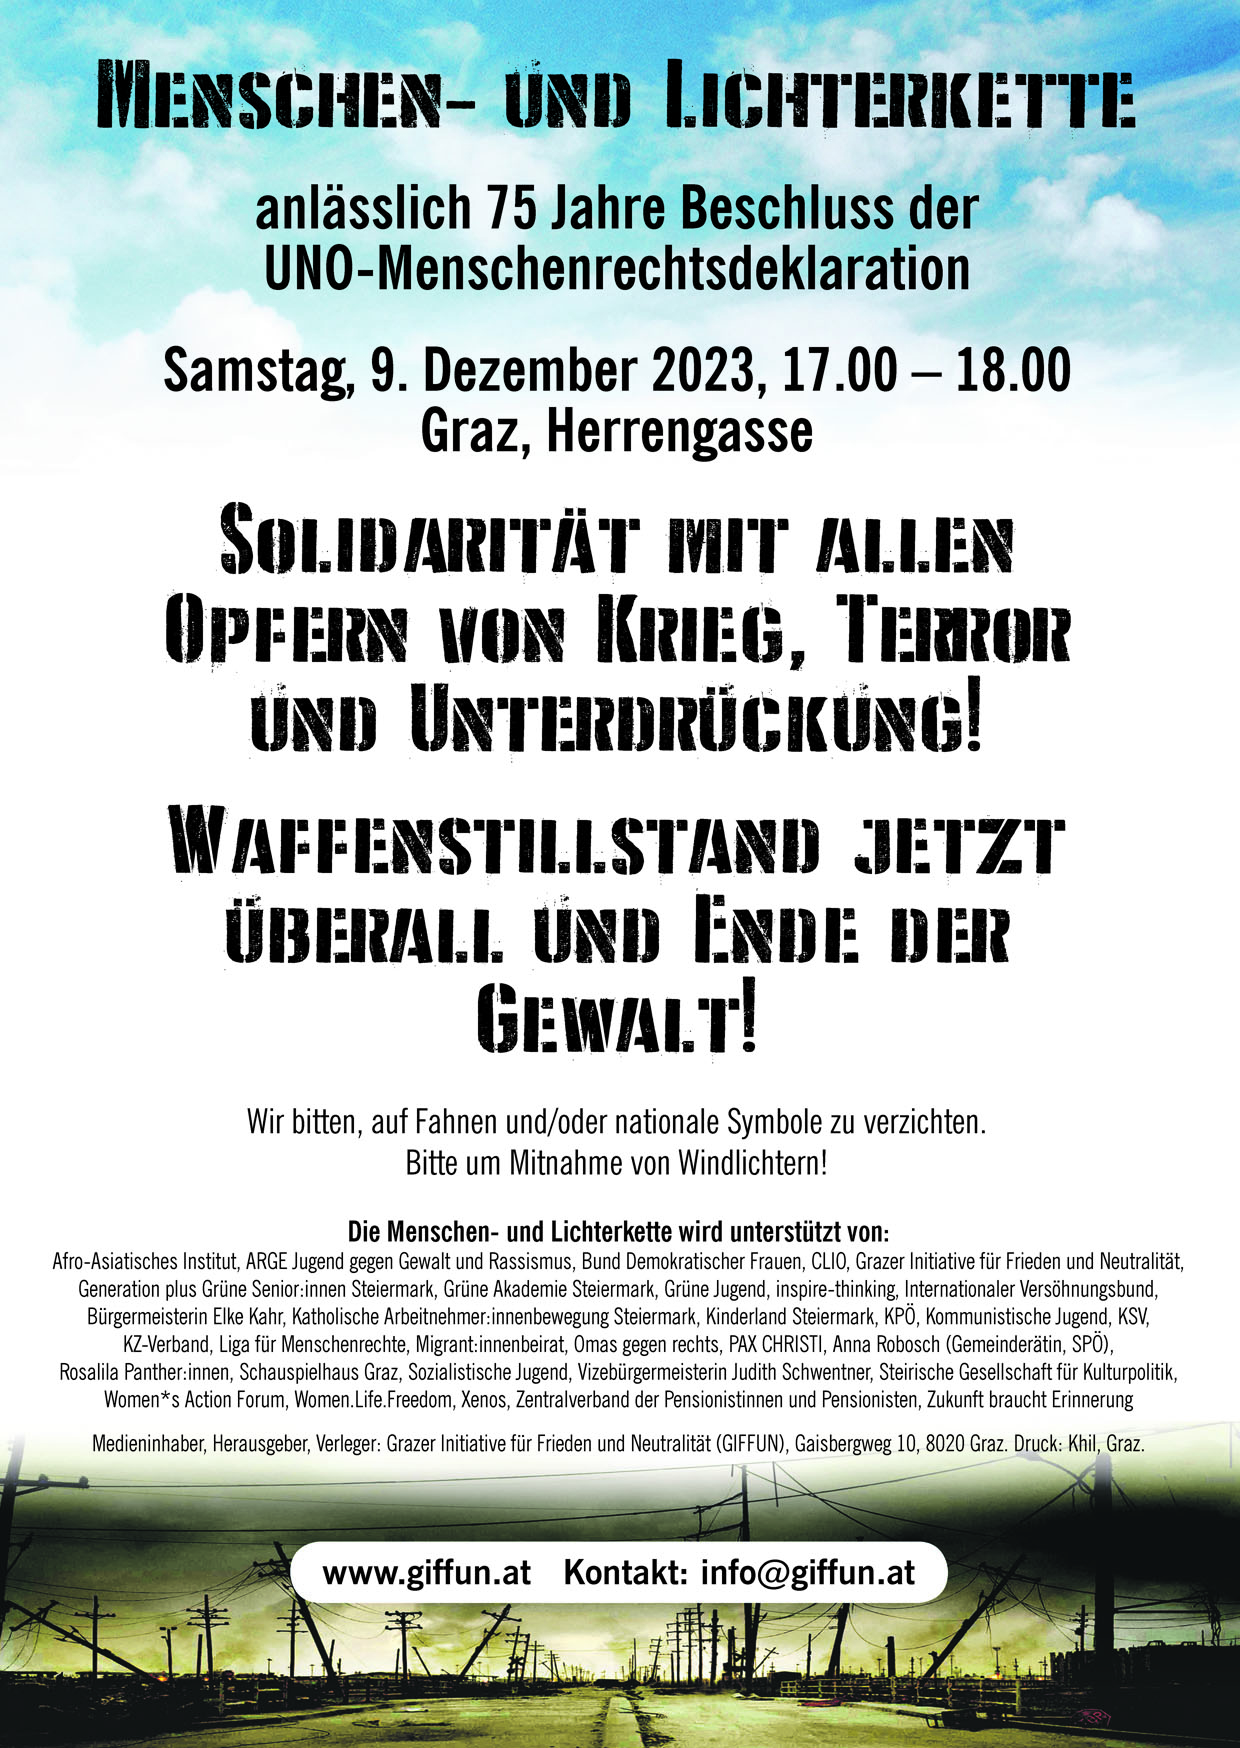 9. Dezember, 17.00 – 18.00, Graz, Herrengasse:Menschen- und Lichterkette anlässlich 75 Jahre Beschluss der UNO-Menschenrechtsdeklaration